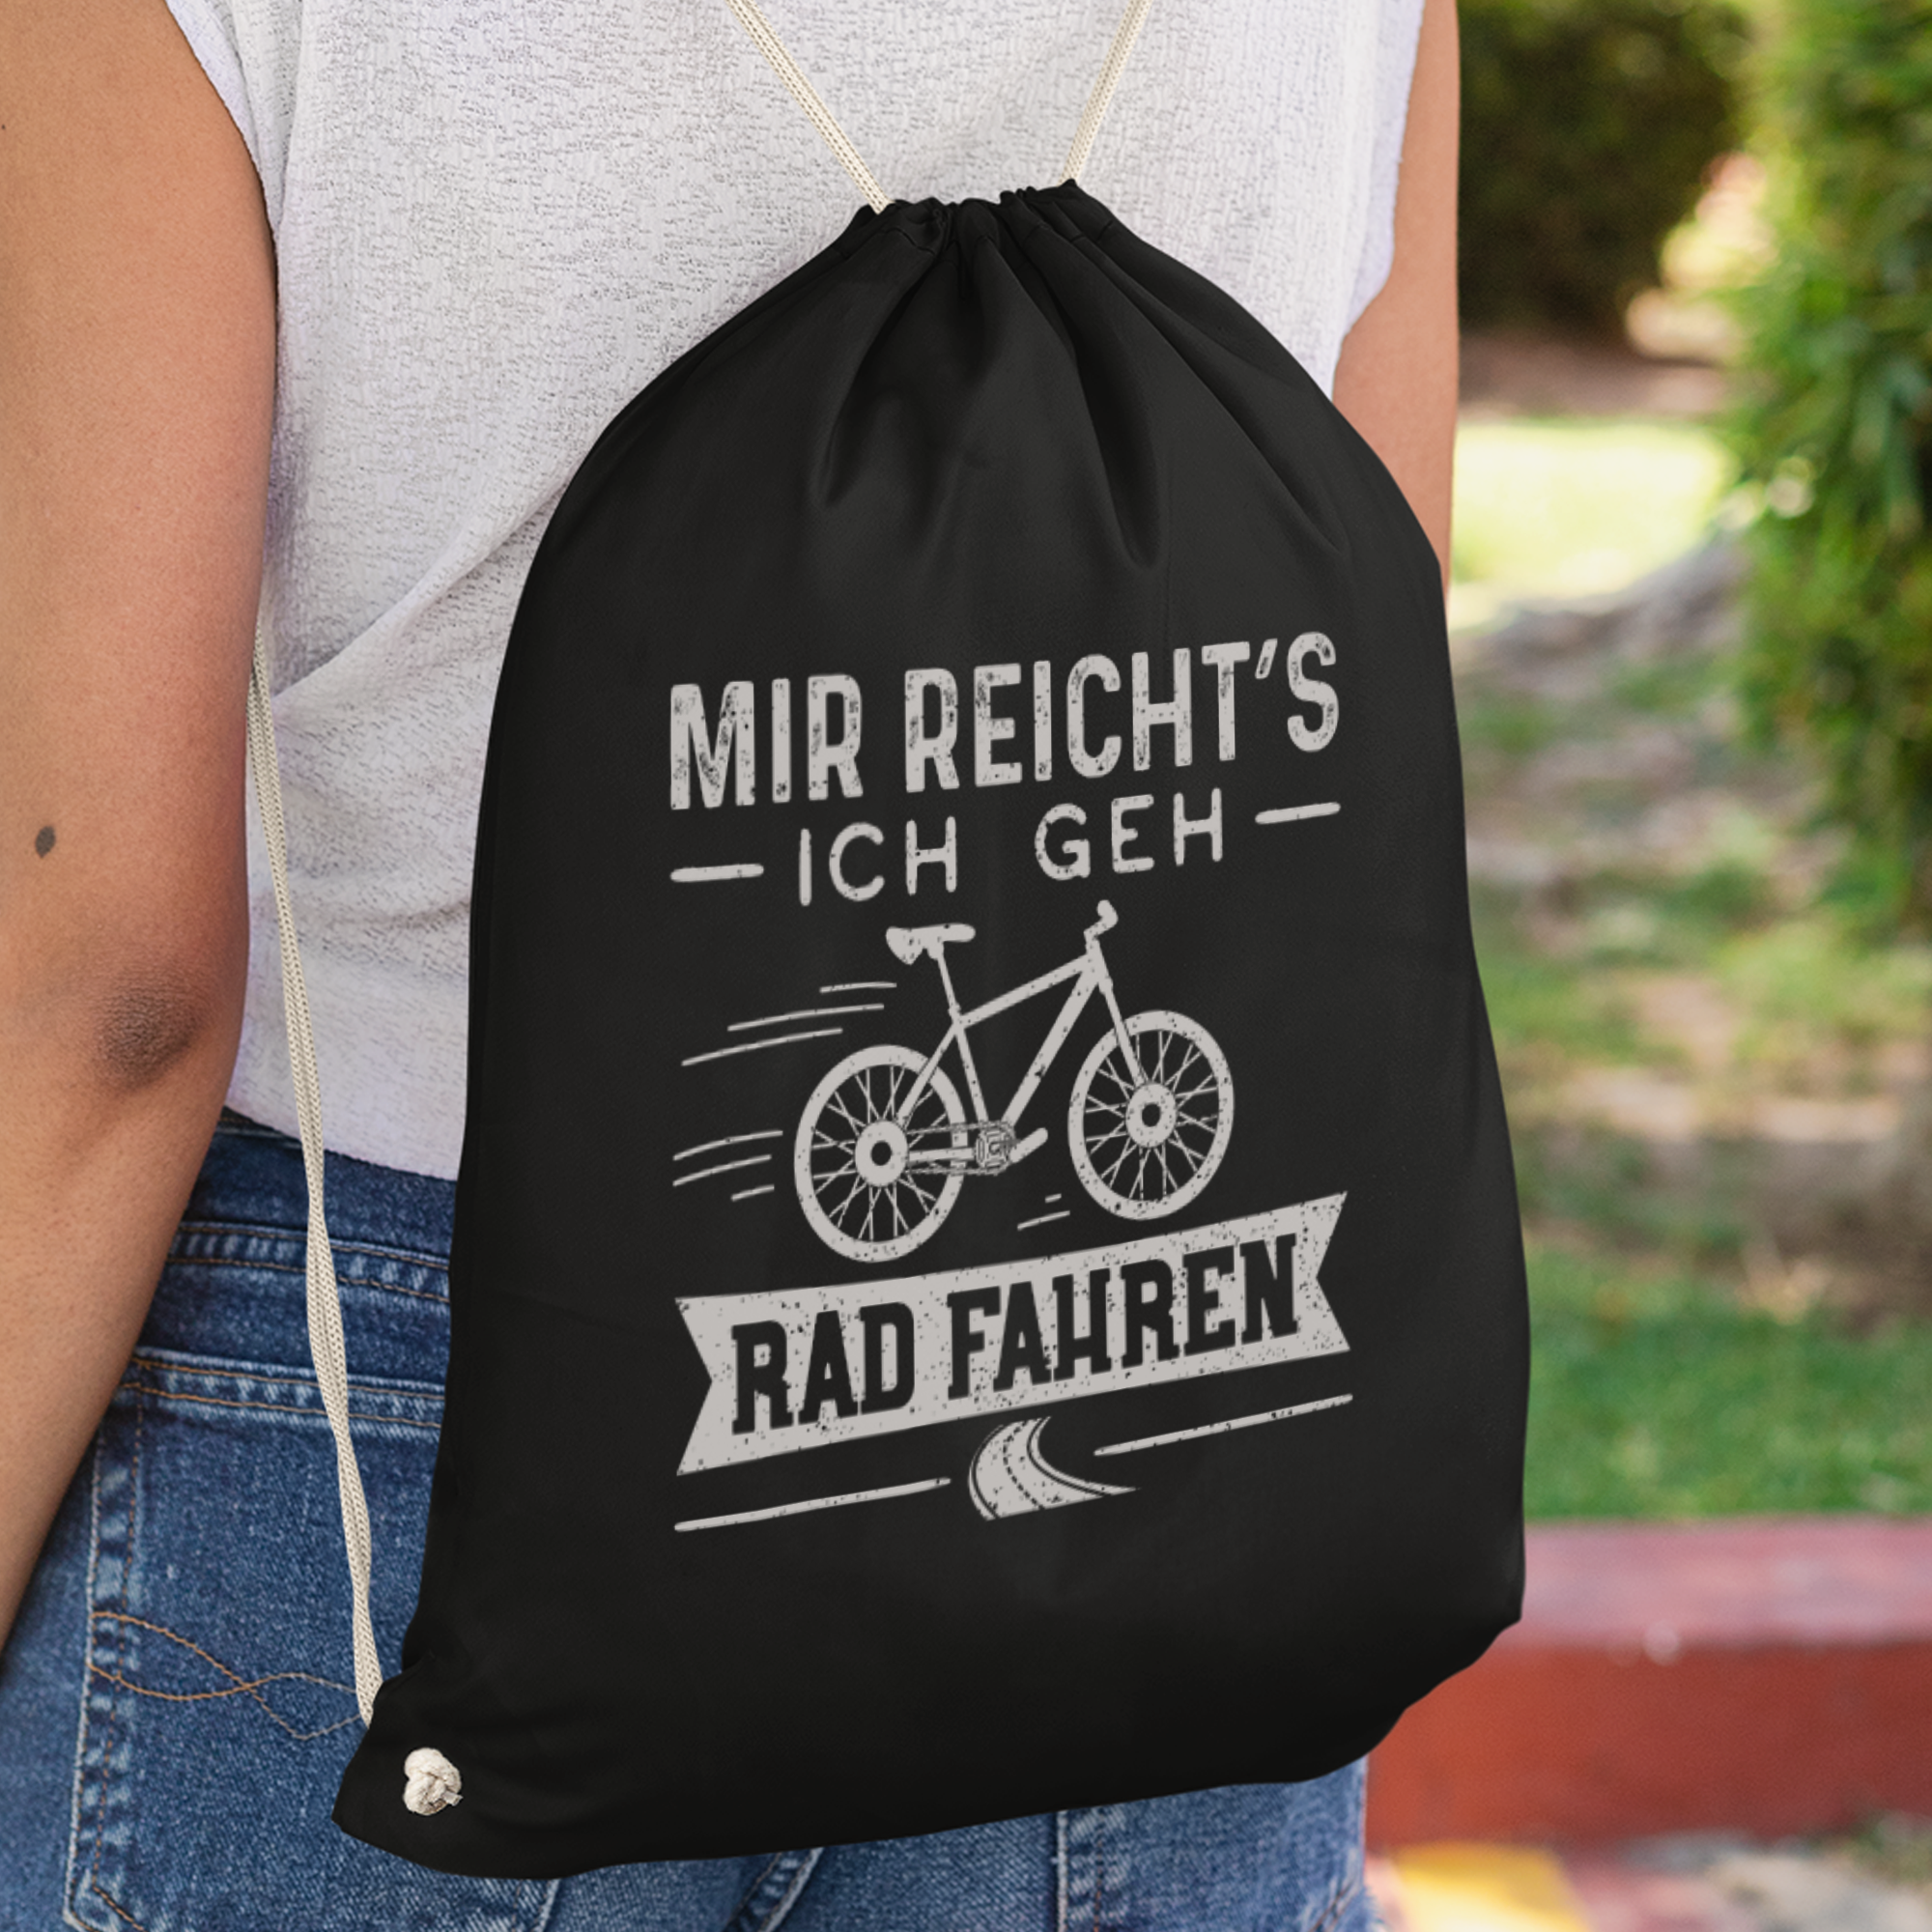 Mir Reicht's Ich Geh Rad Fahren Turnbeutel - DESIGNSBYJNK5.COM